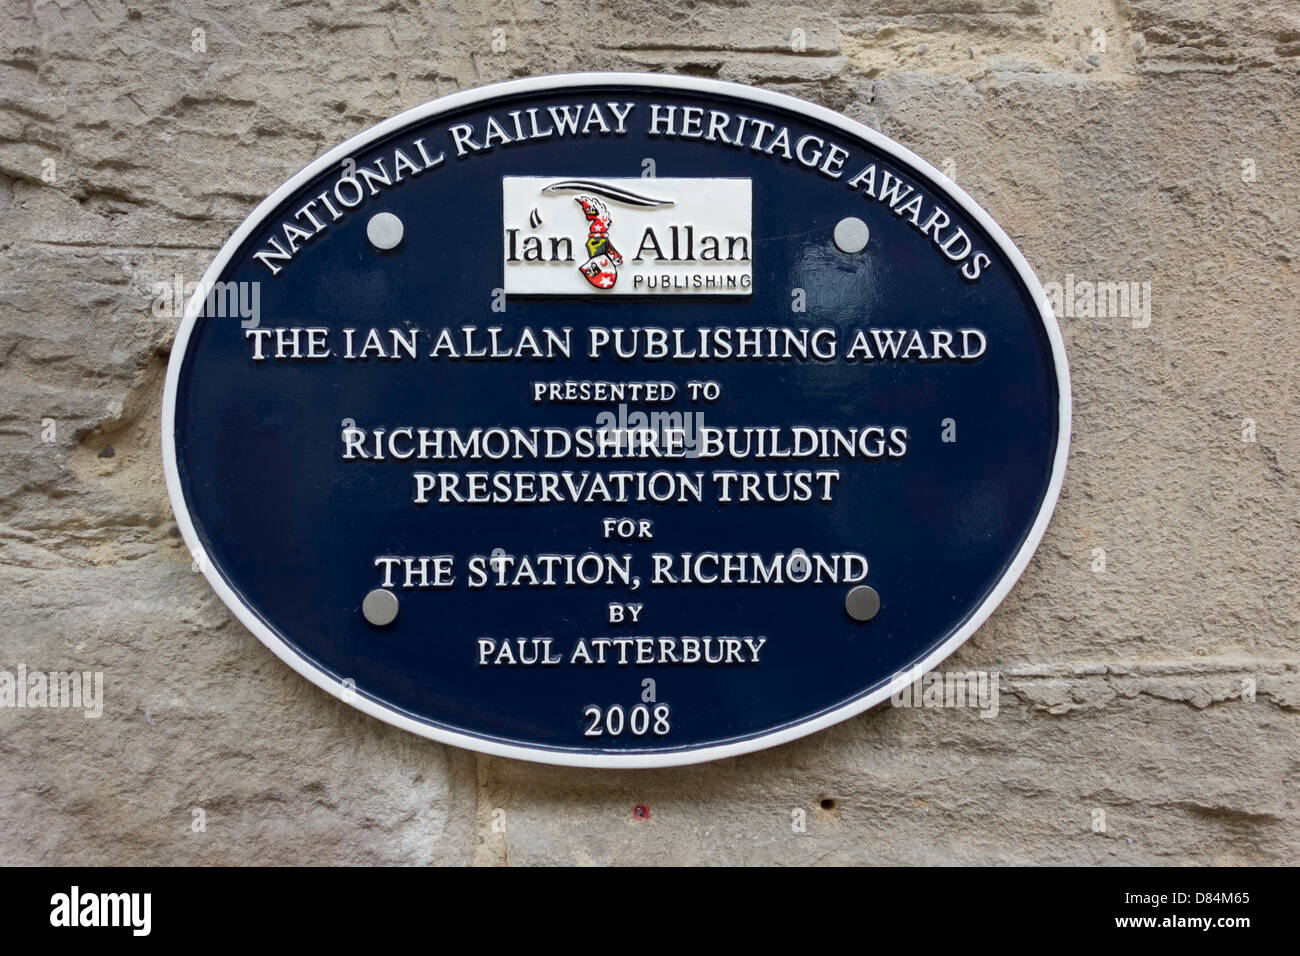 Una Ferrovia Nazionale Heritage Awards la placca alla stazione di Richmond ha presentato a edifici Richmondshire Preservation Trust Foto Stock